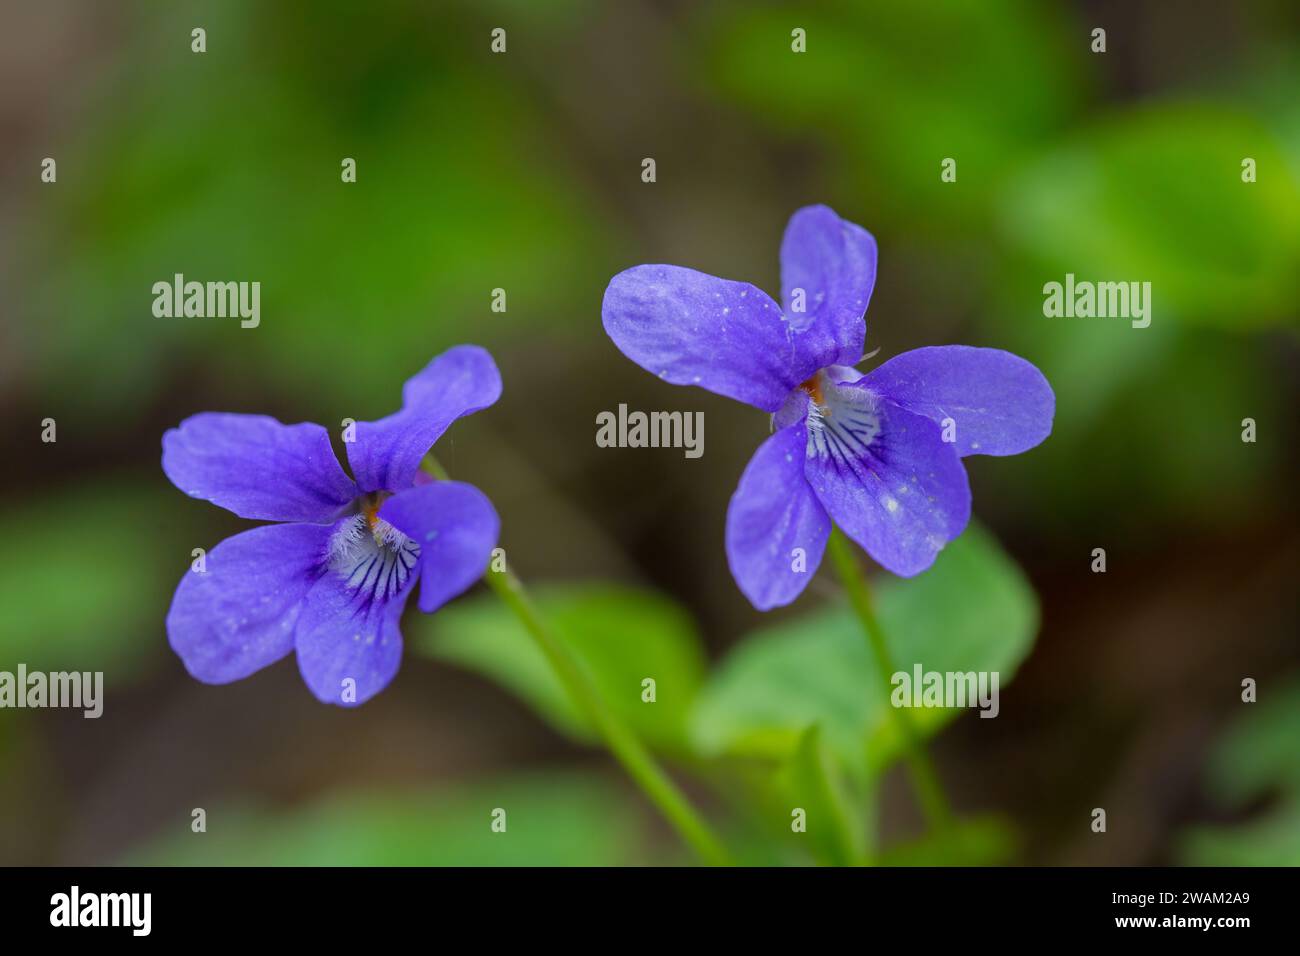 Violette de chien précoce / violette de bois pâle (Viola reichenbachiana / Viola sylvestris) en fleur au printemps Banque D'Images